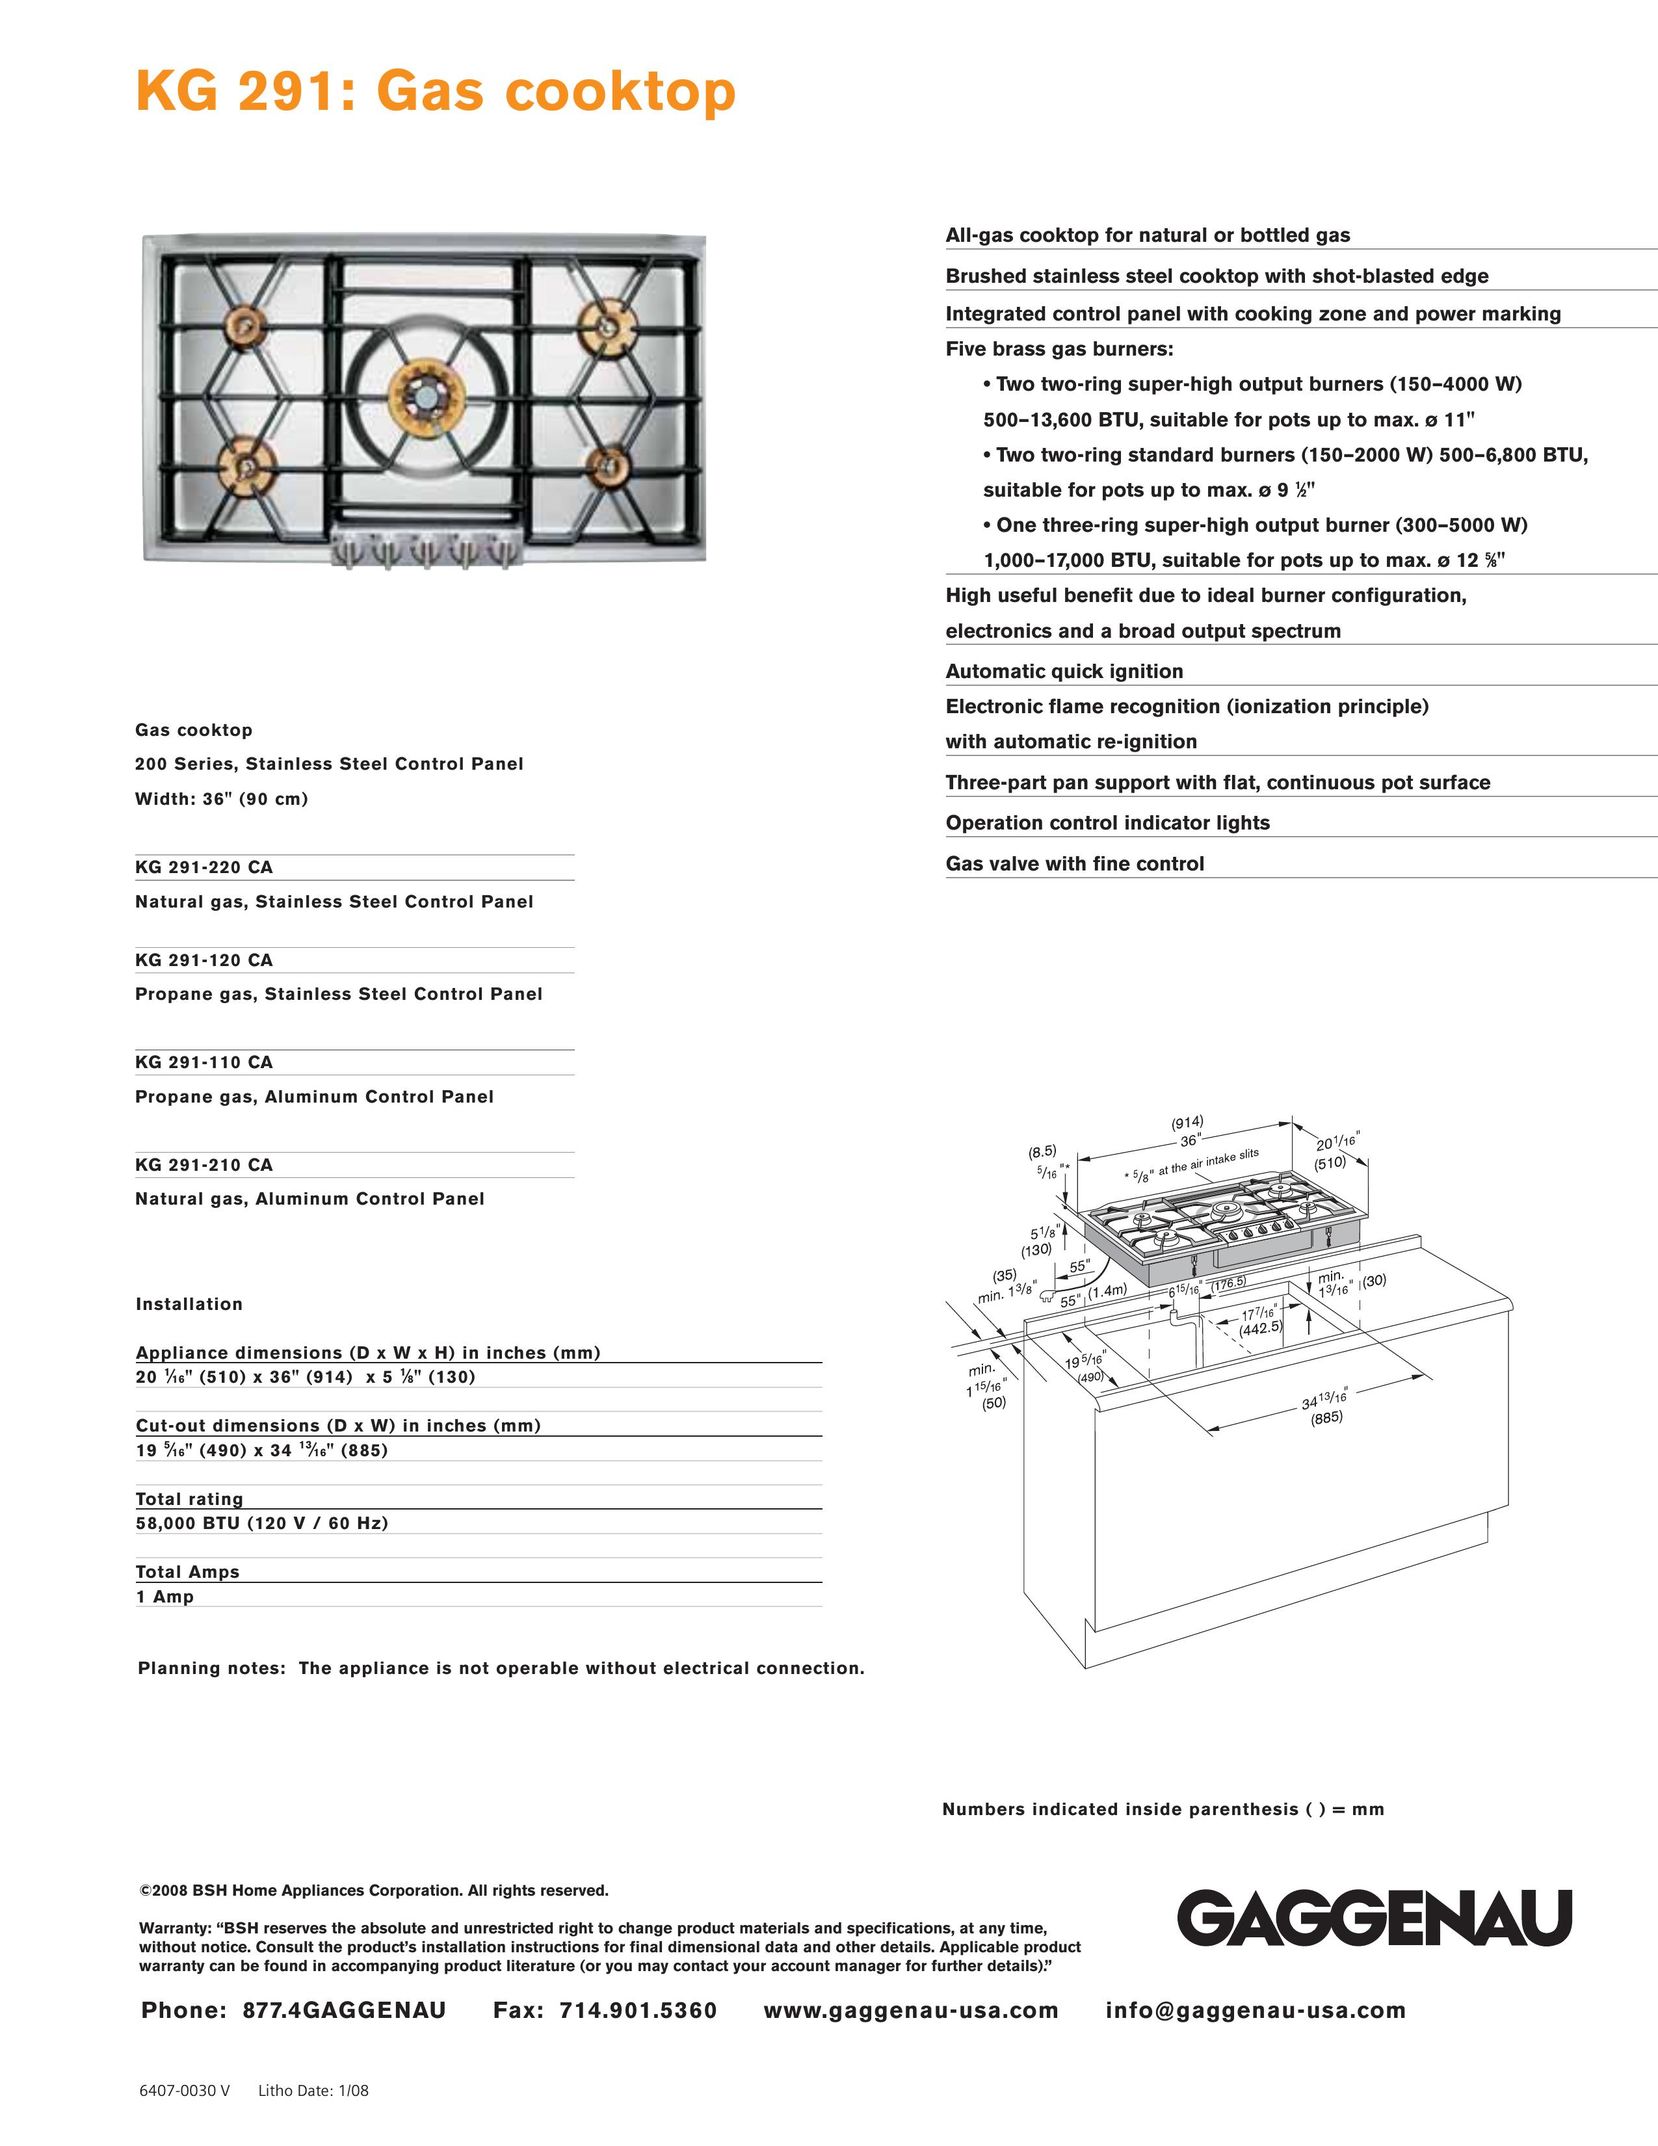 Gaggenau KG 291-110 CA Cooktop User Manual